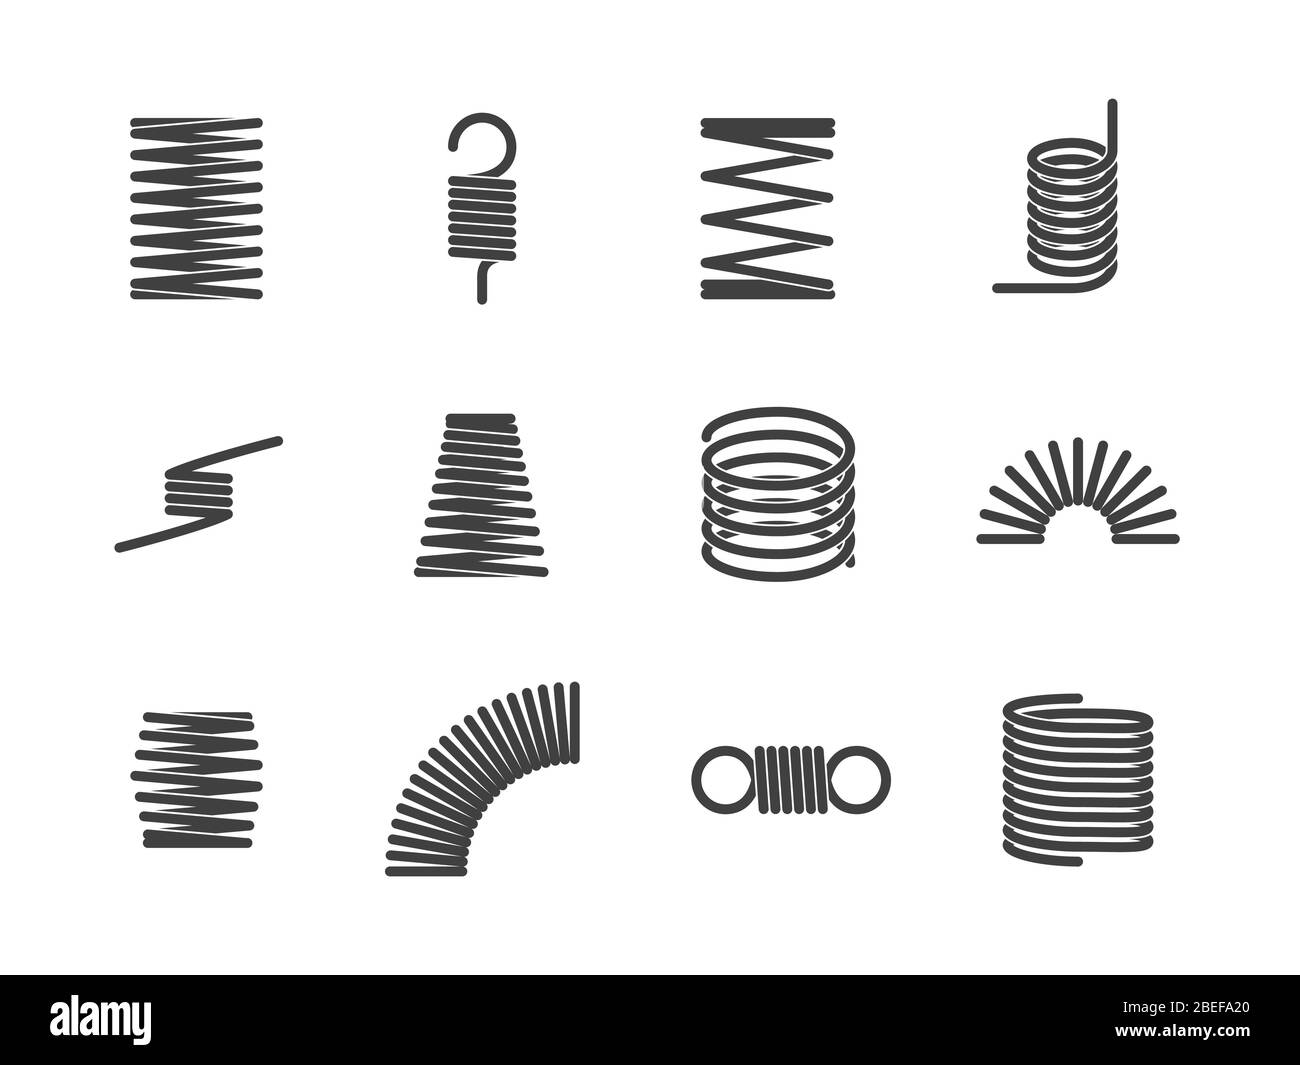 Spirale metallica flessibile con molla elastica isolata su sfondo bianco. Illustrazione vettoriale Illustrazione Vettoriale